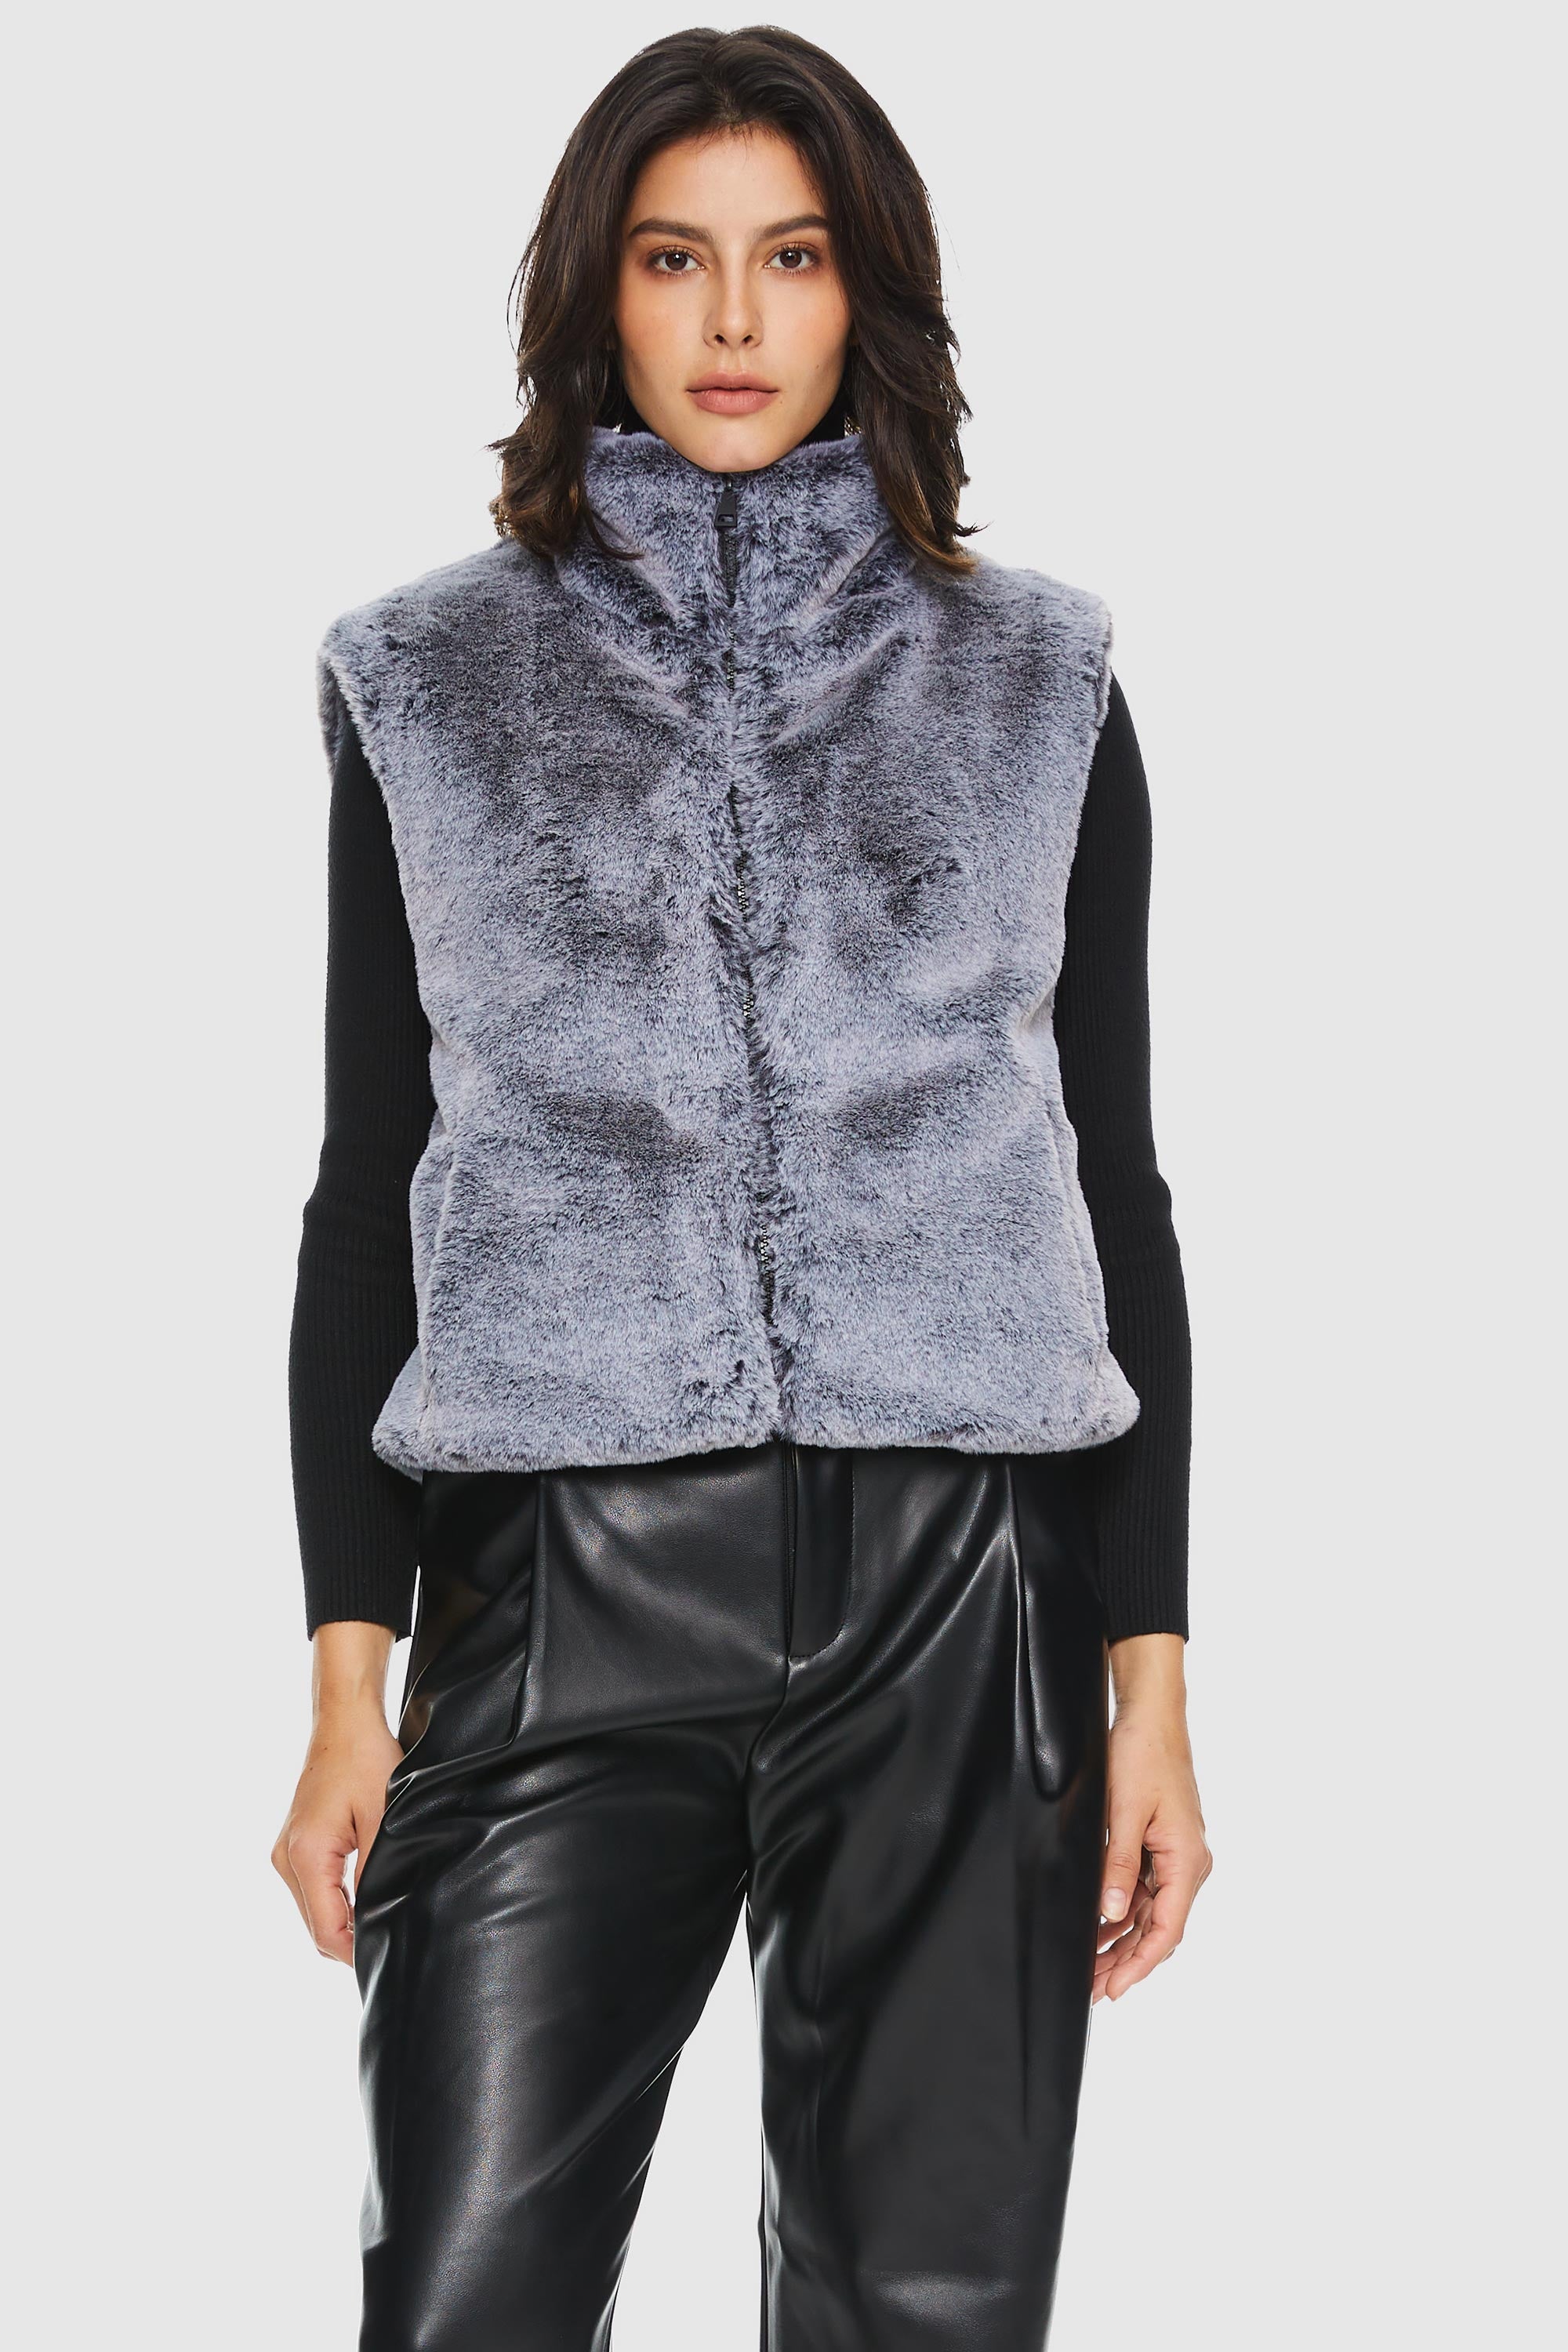 Solid Zip Up Faux Fur Vest Coat